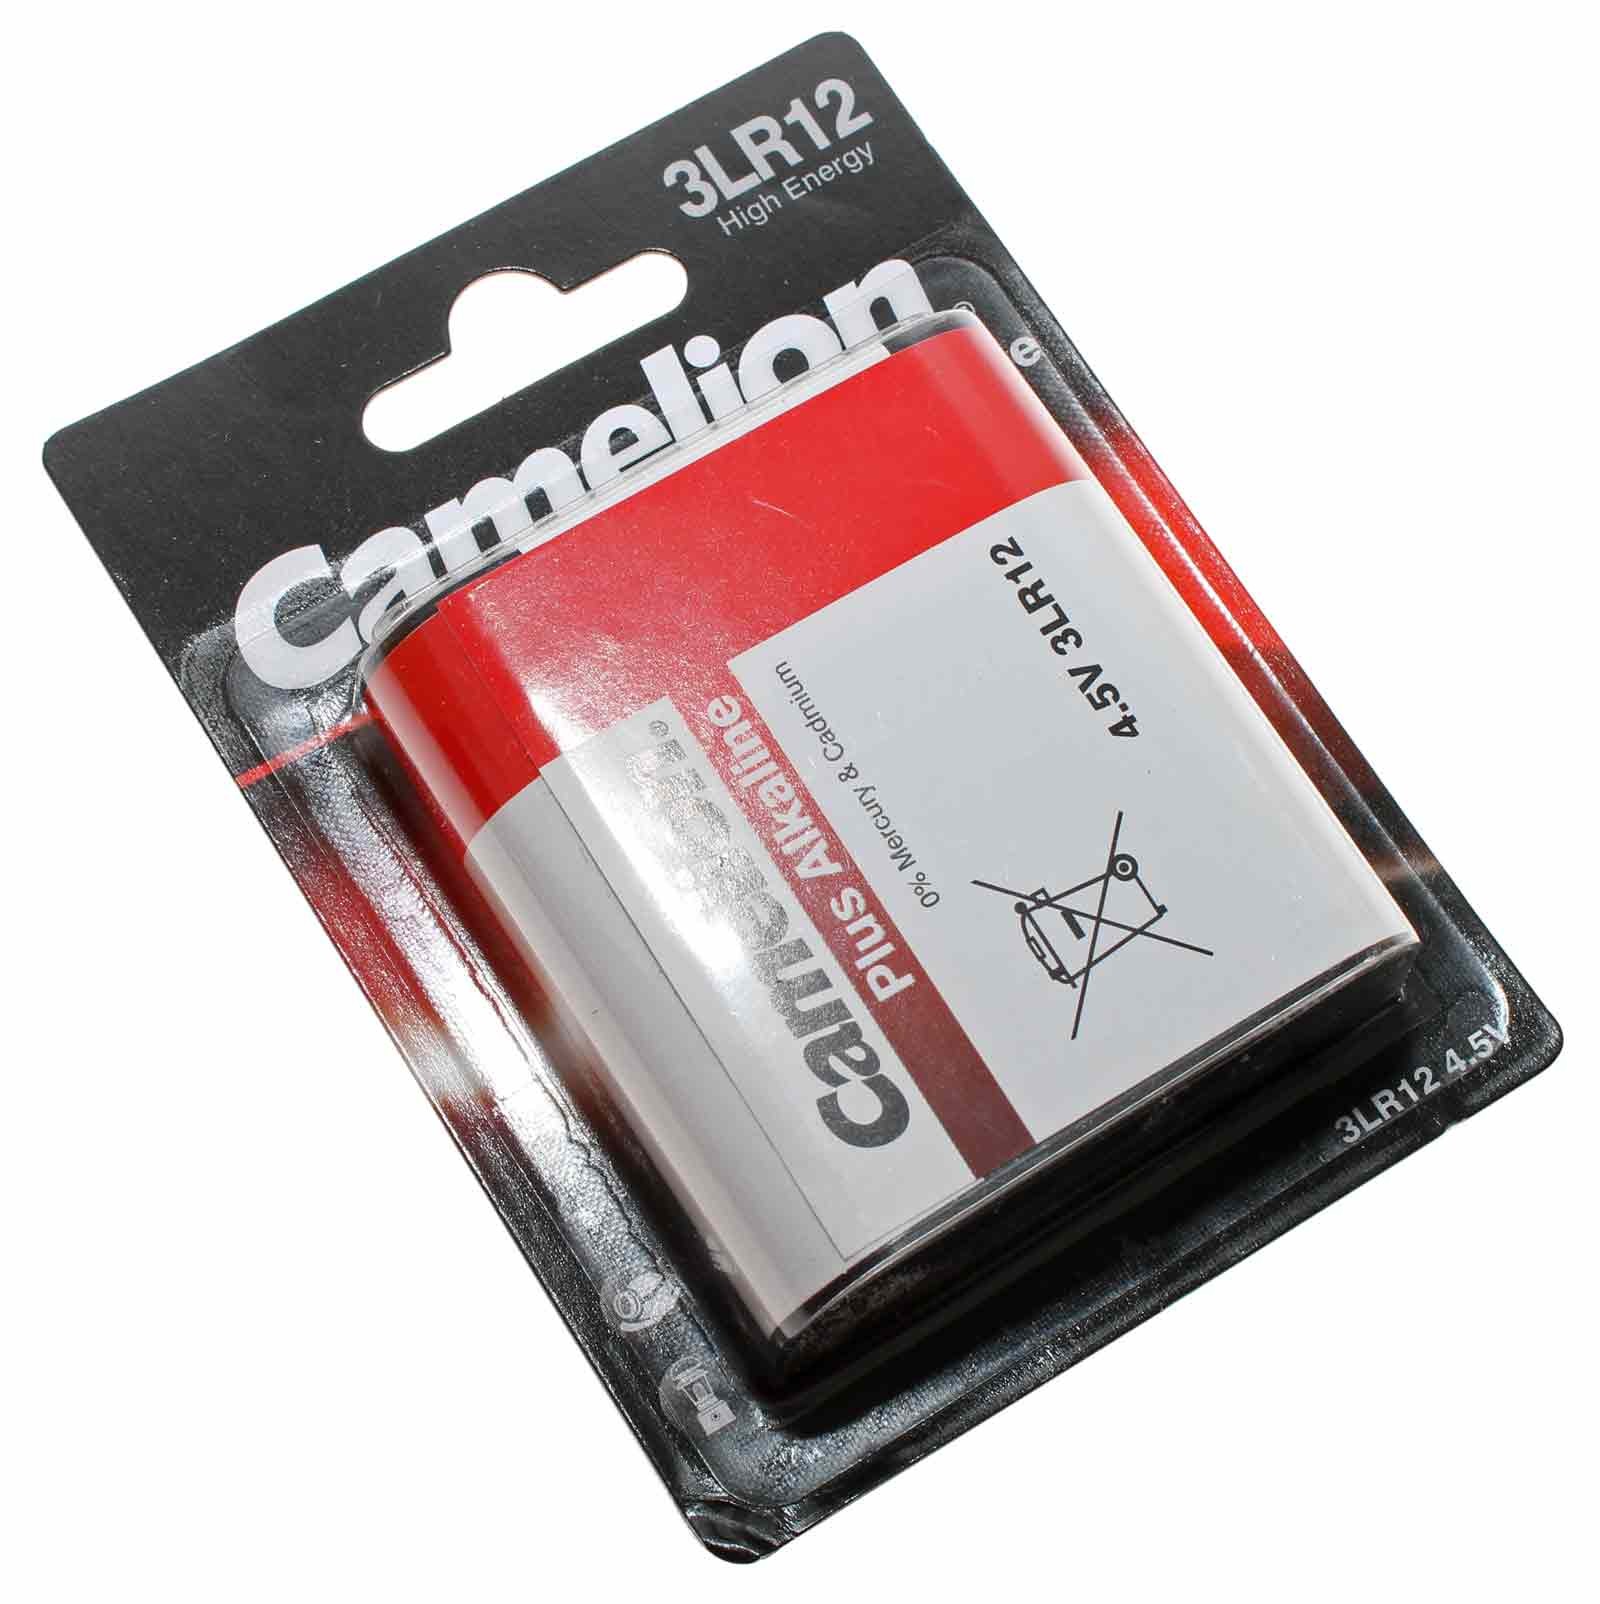 Camelion 3LR12 Plus Alkaline Flachbatterie mit 4,5 Volt und 3000mAh Kapazität